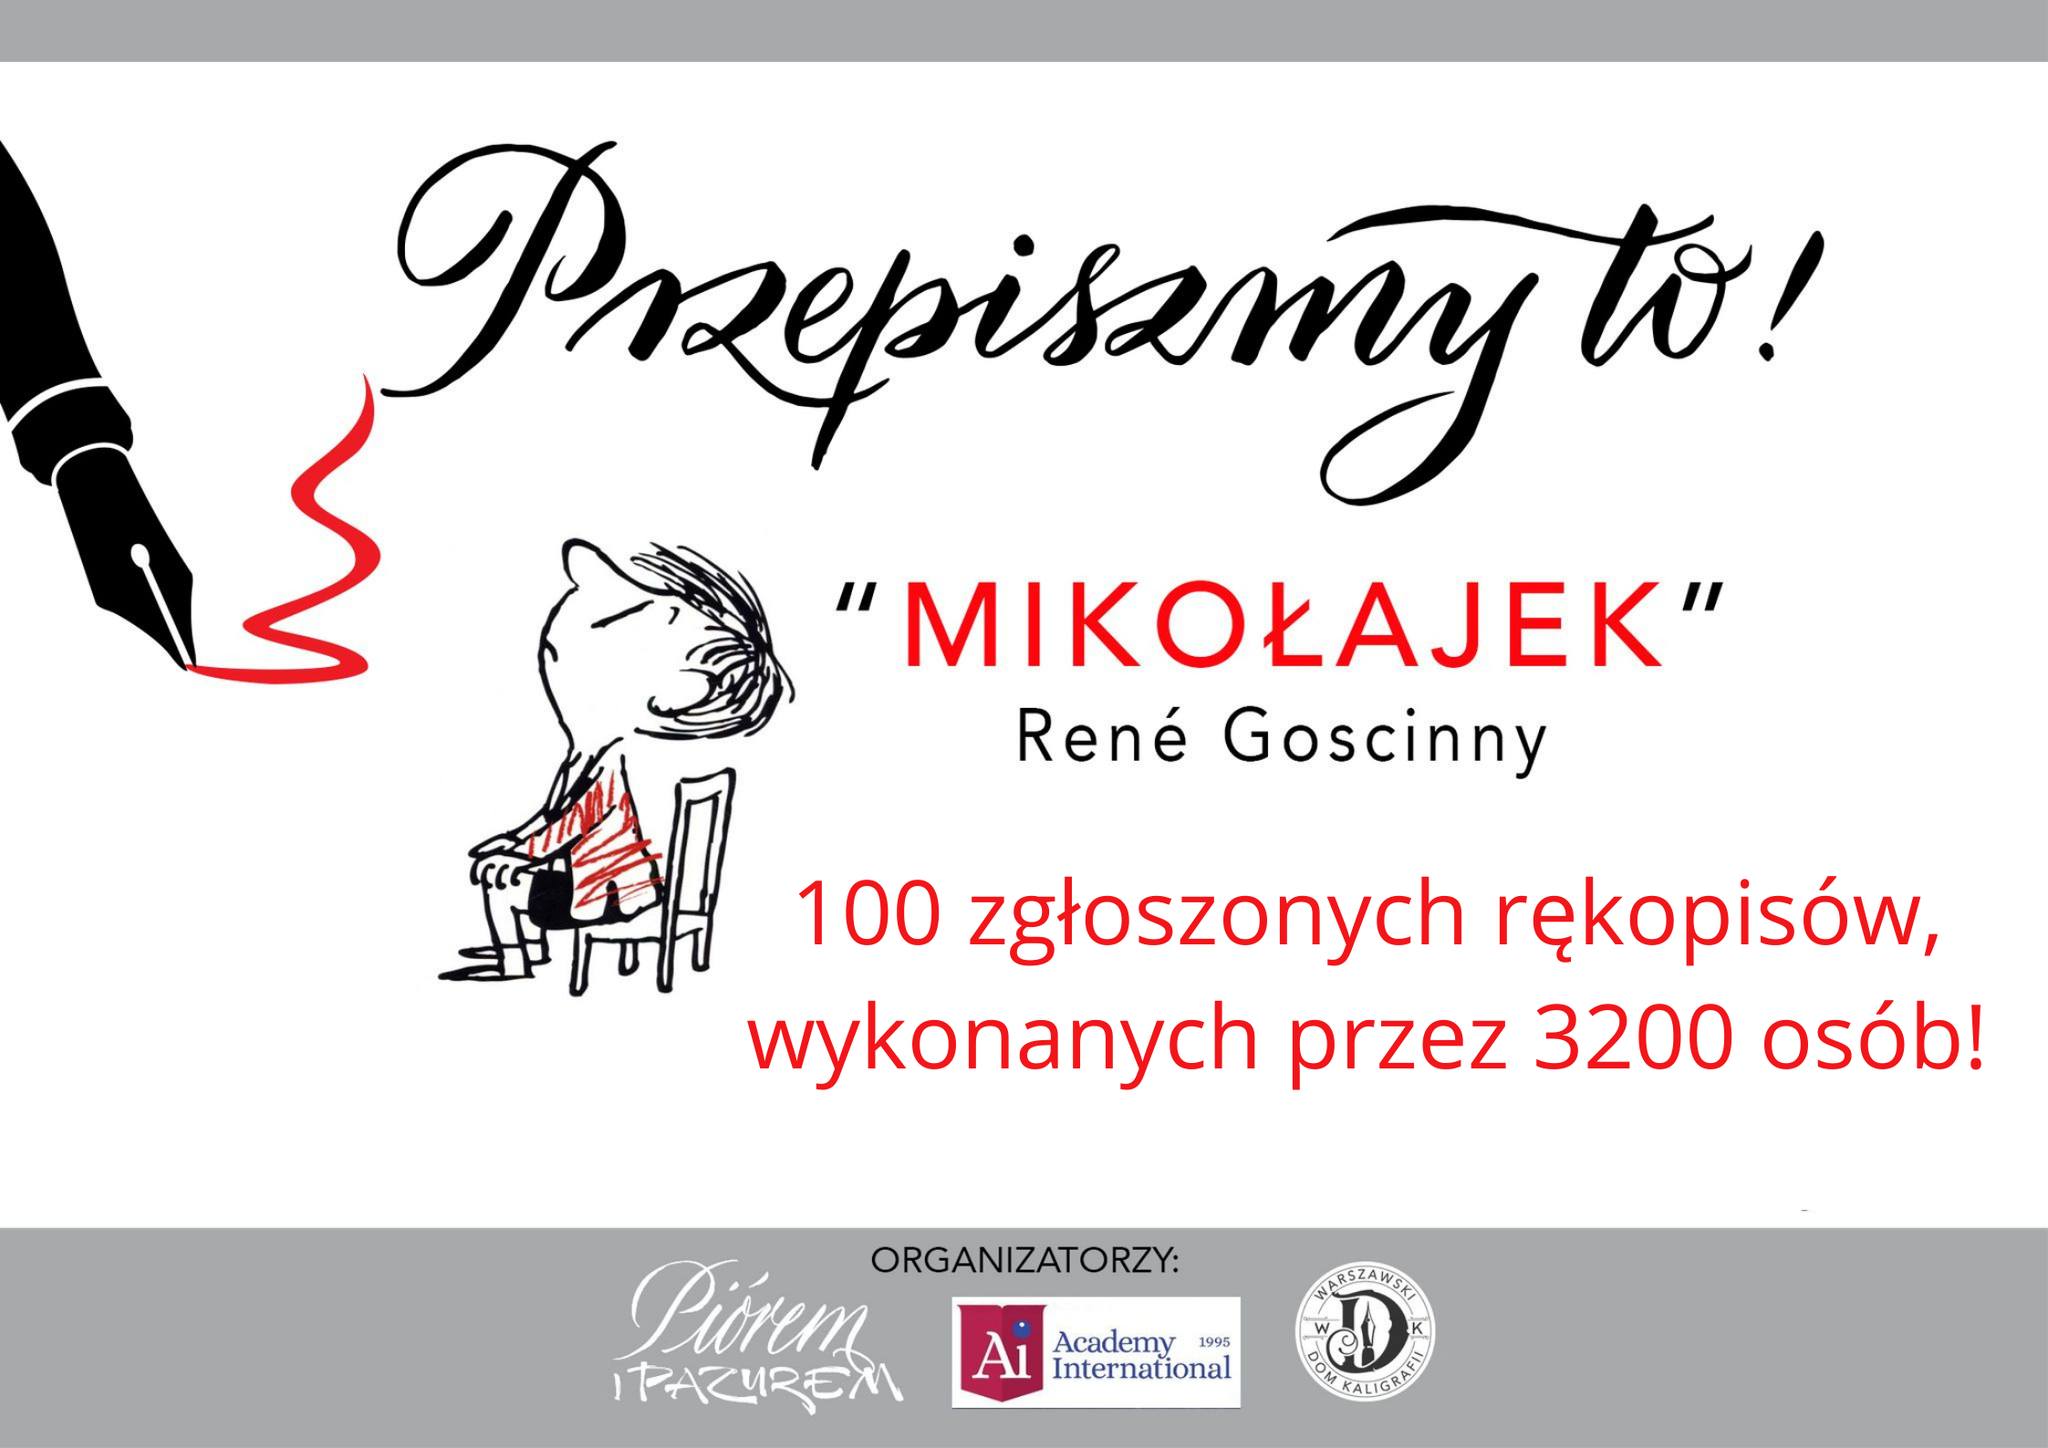 Plakat promujący akcję przepisywania przygód Mikołajka